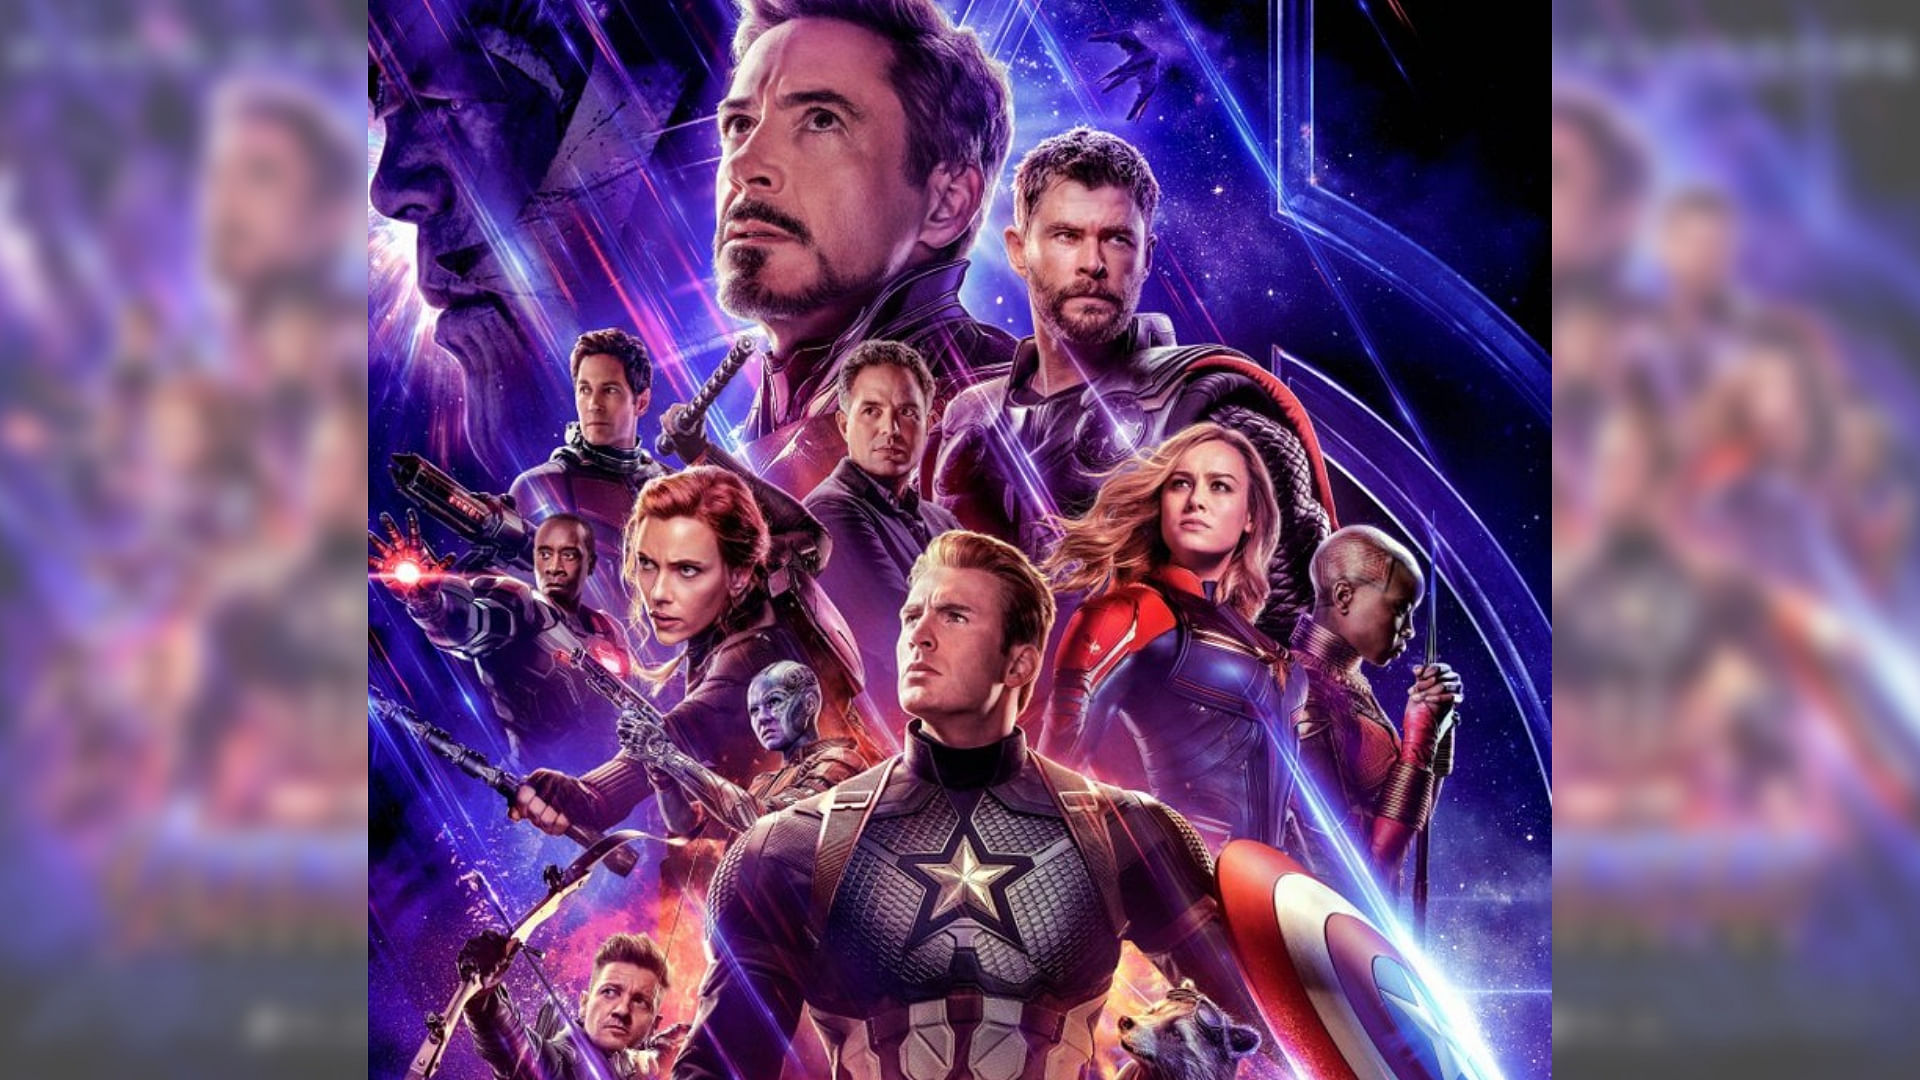 A poster for <i>Avengers: Endgame</i>.